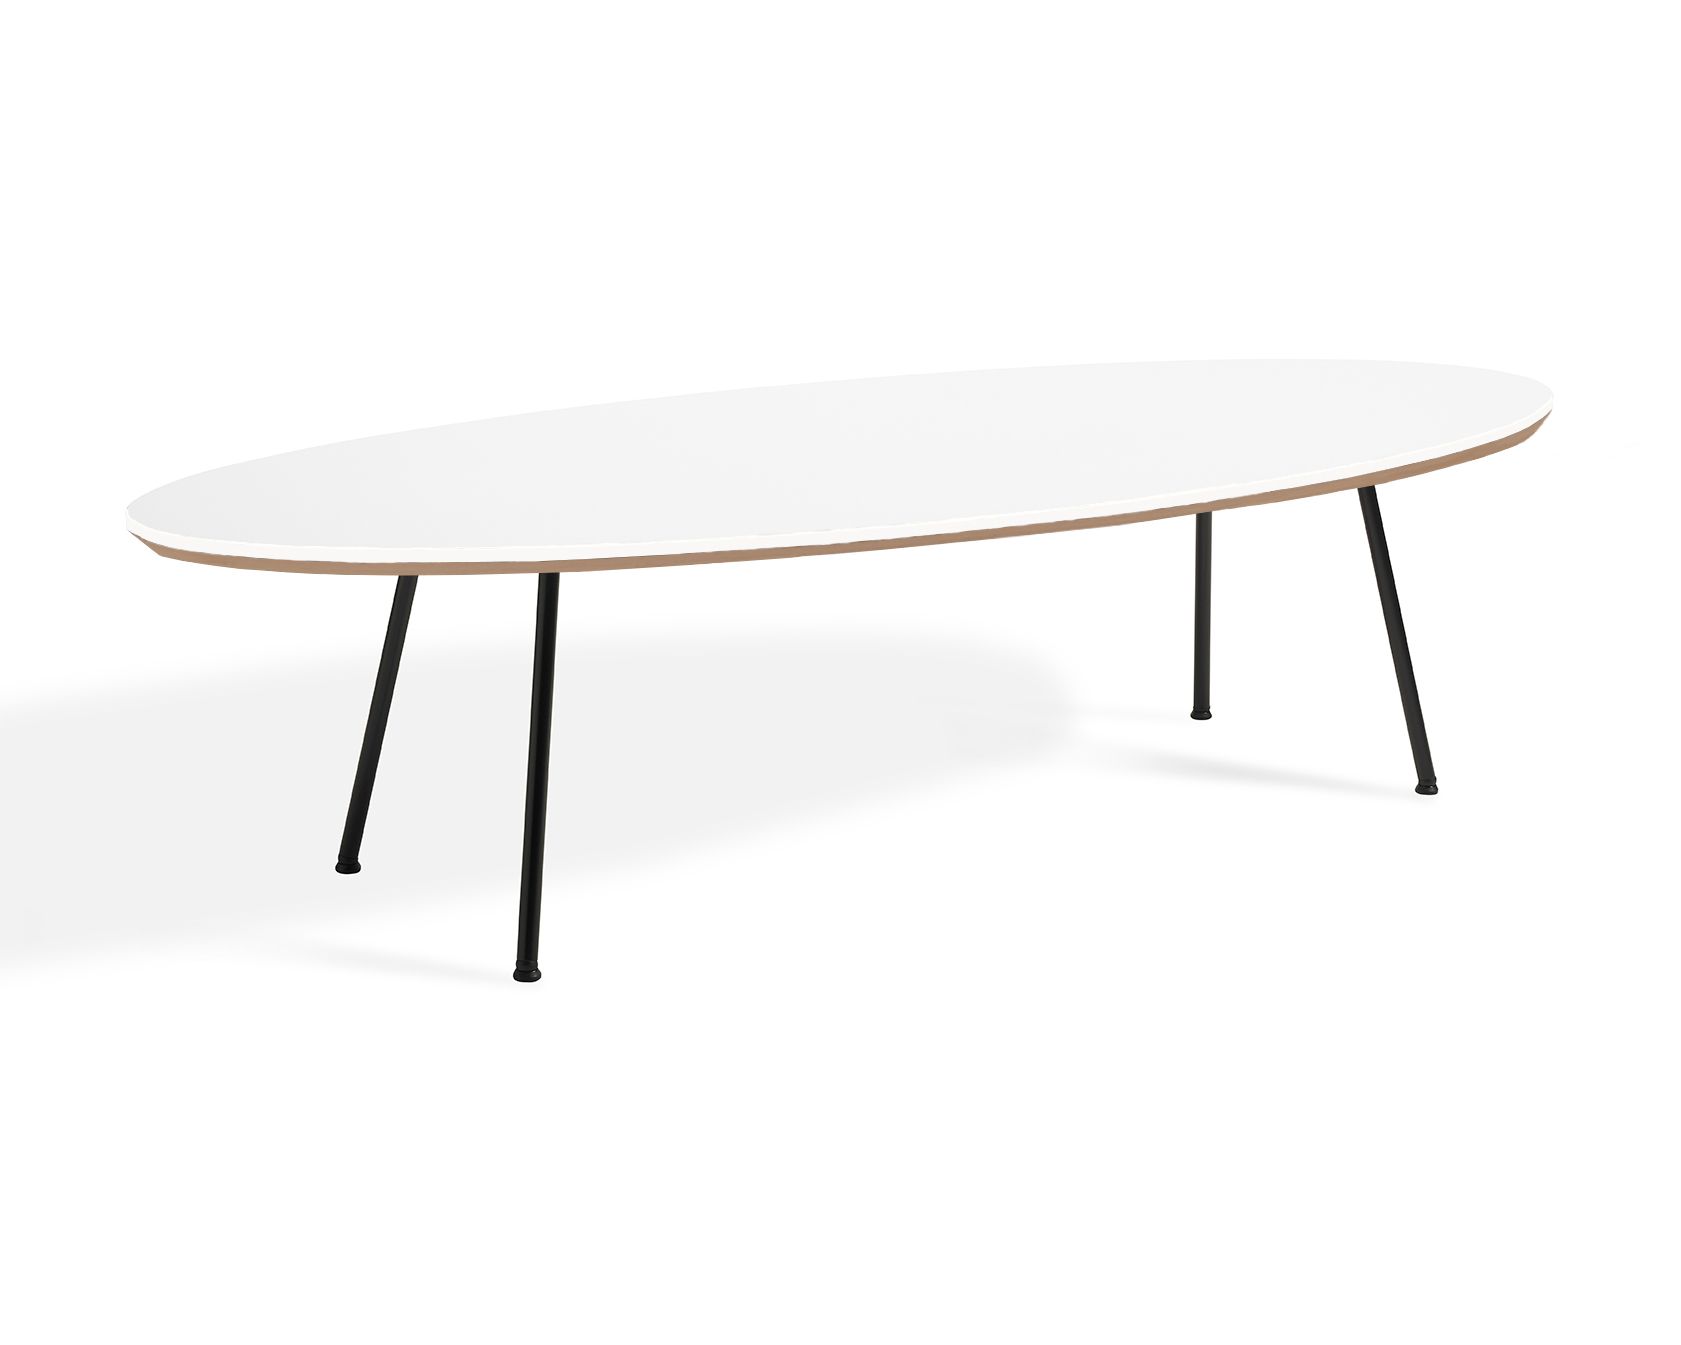 elliptical coffee table 1600 x 700 x 415mm